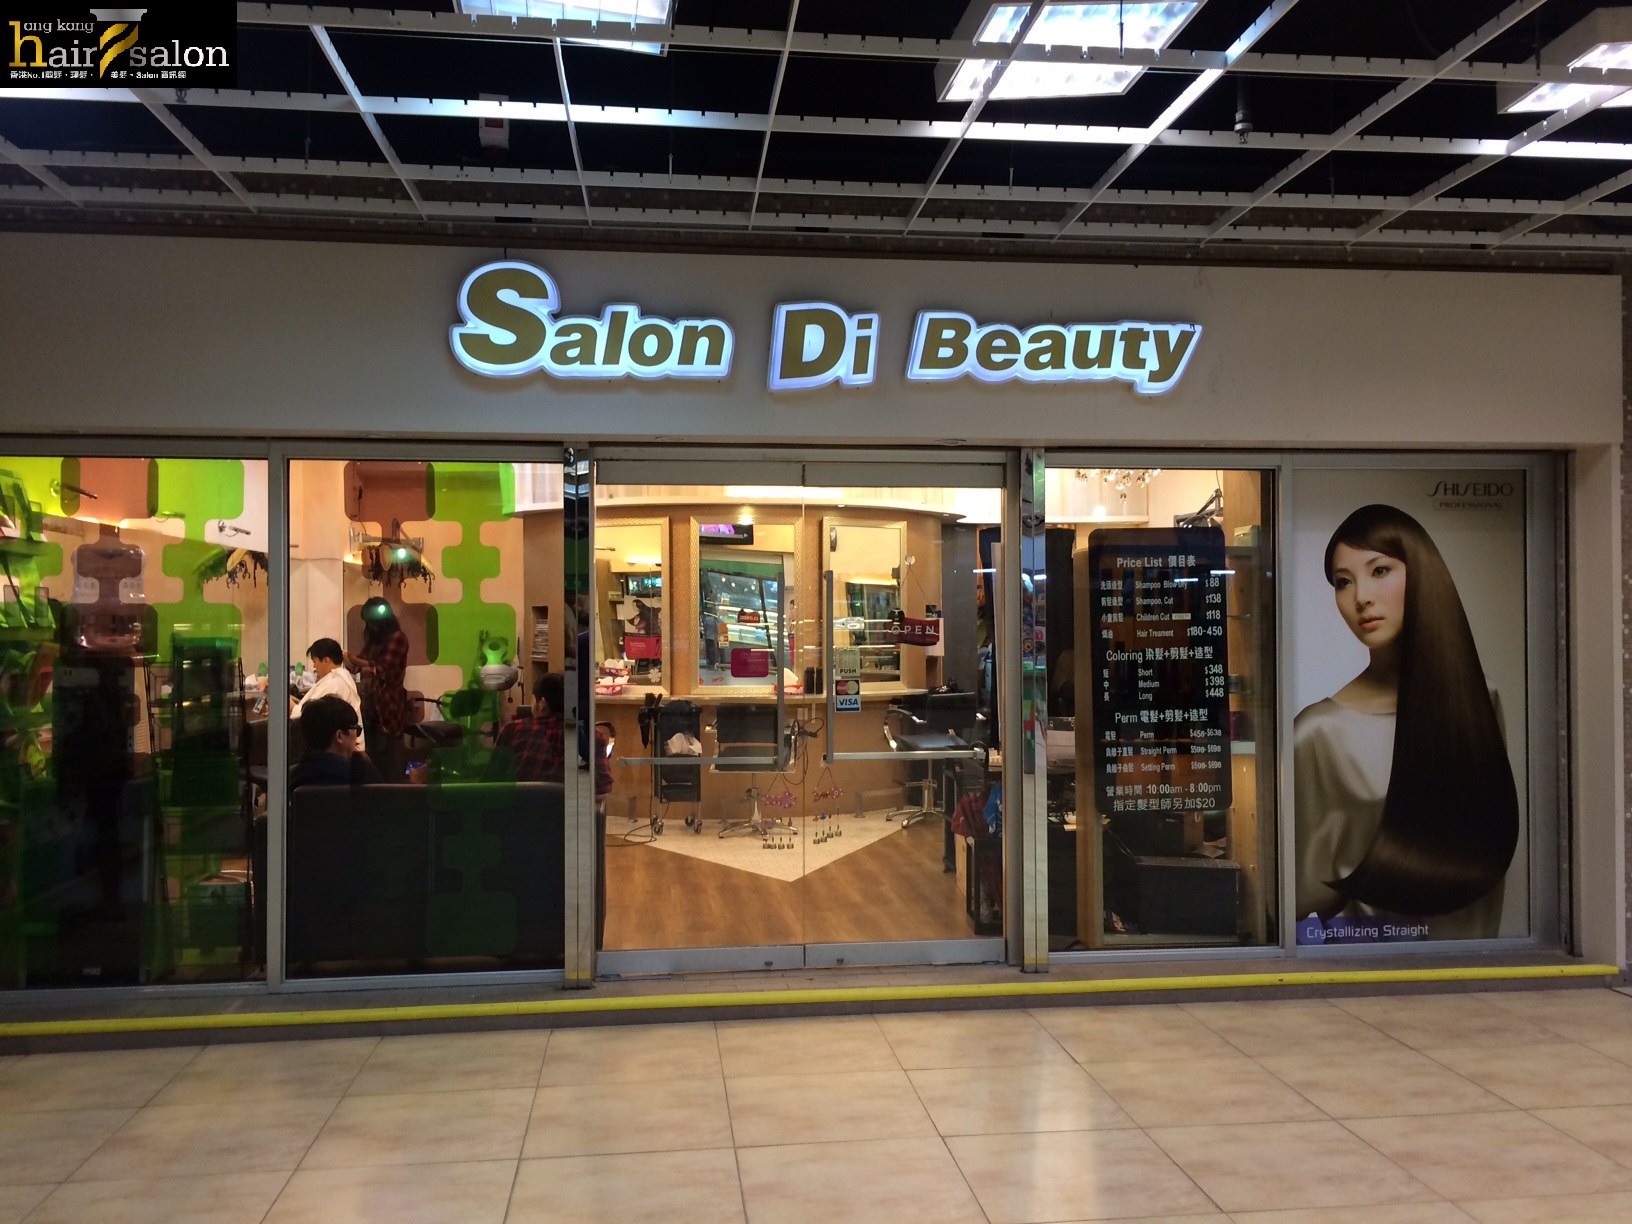 Haircut: Salon Di Beauty 集美軒髮廊 (龍蟠苑商場)